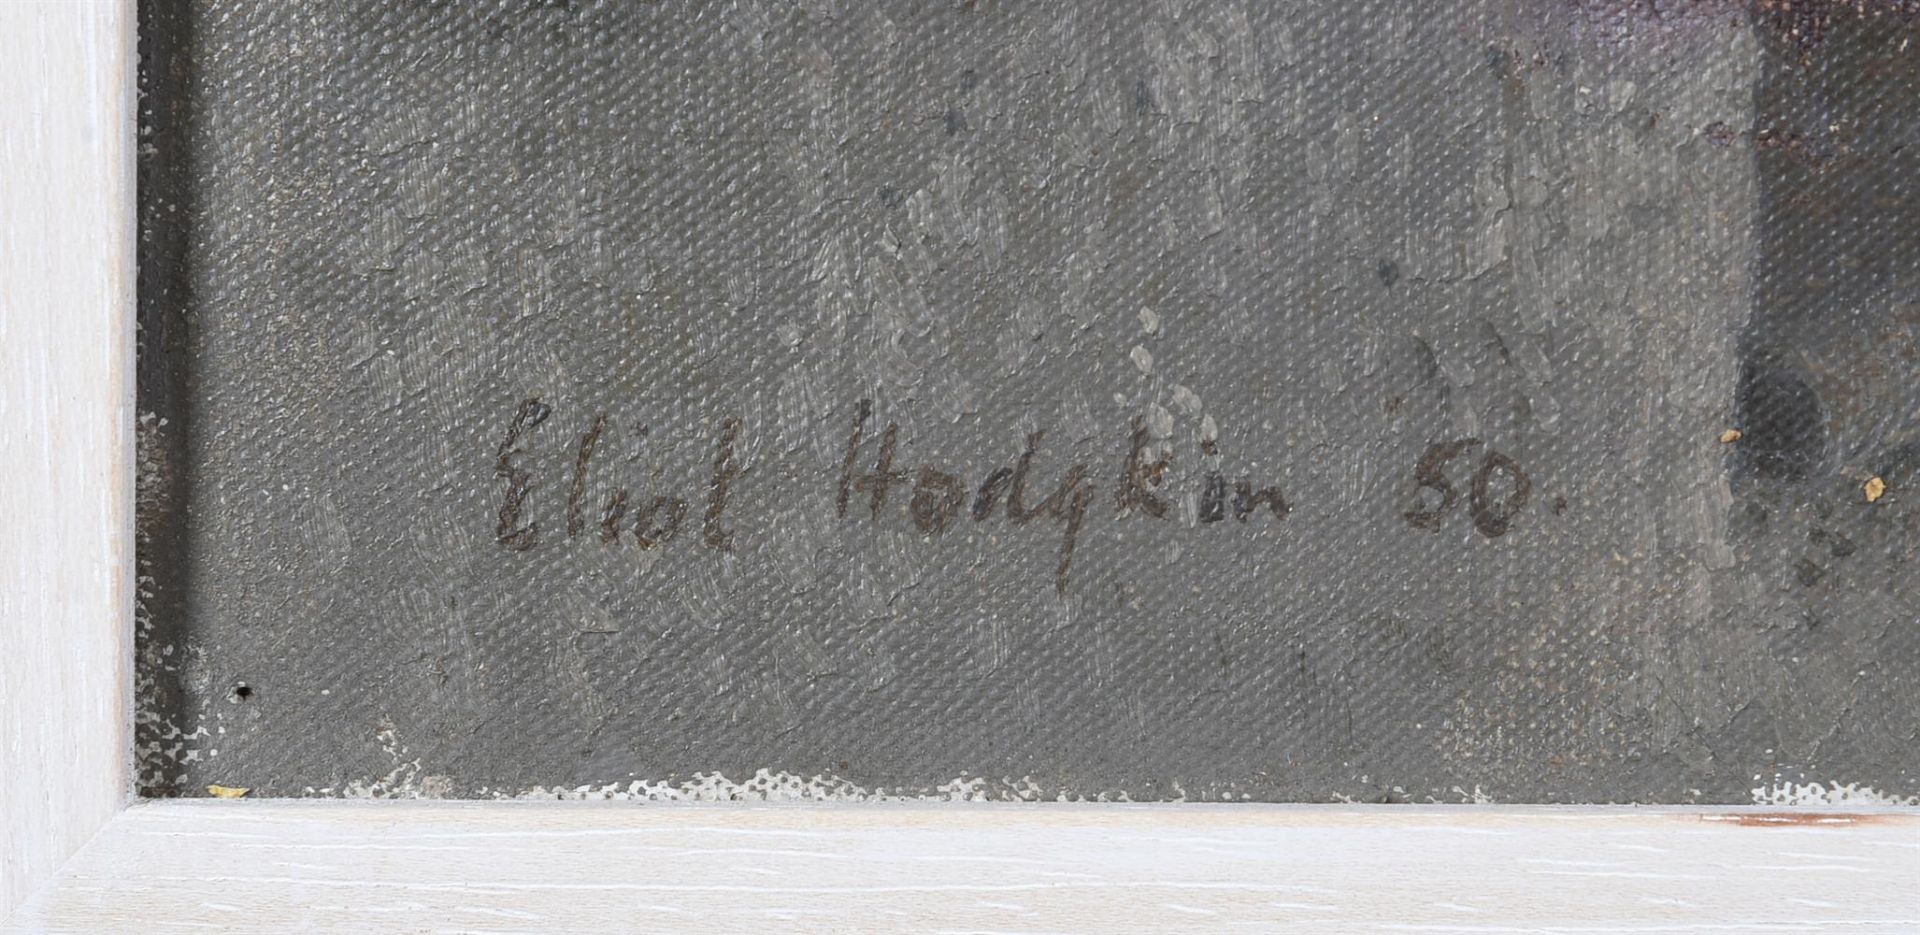 λ ELIOT HODGKIN (BRITISH 1905-1987), IN THE TICINO, SWITZERLAND - Image 3 of 4